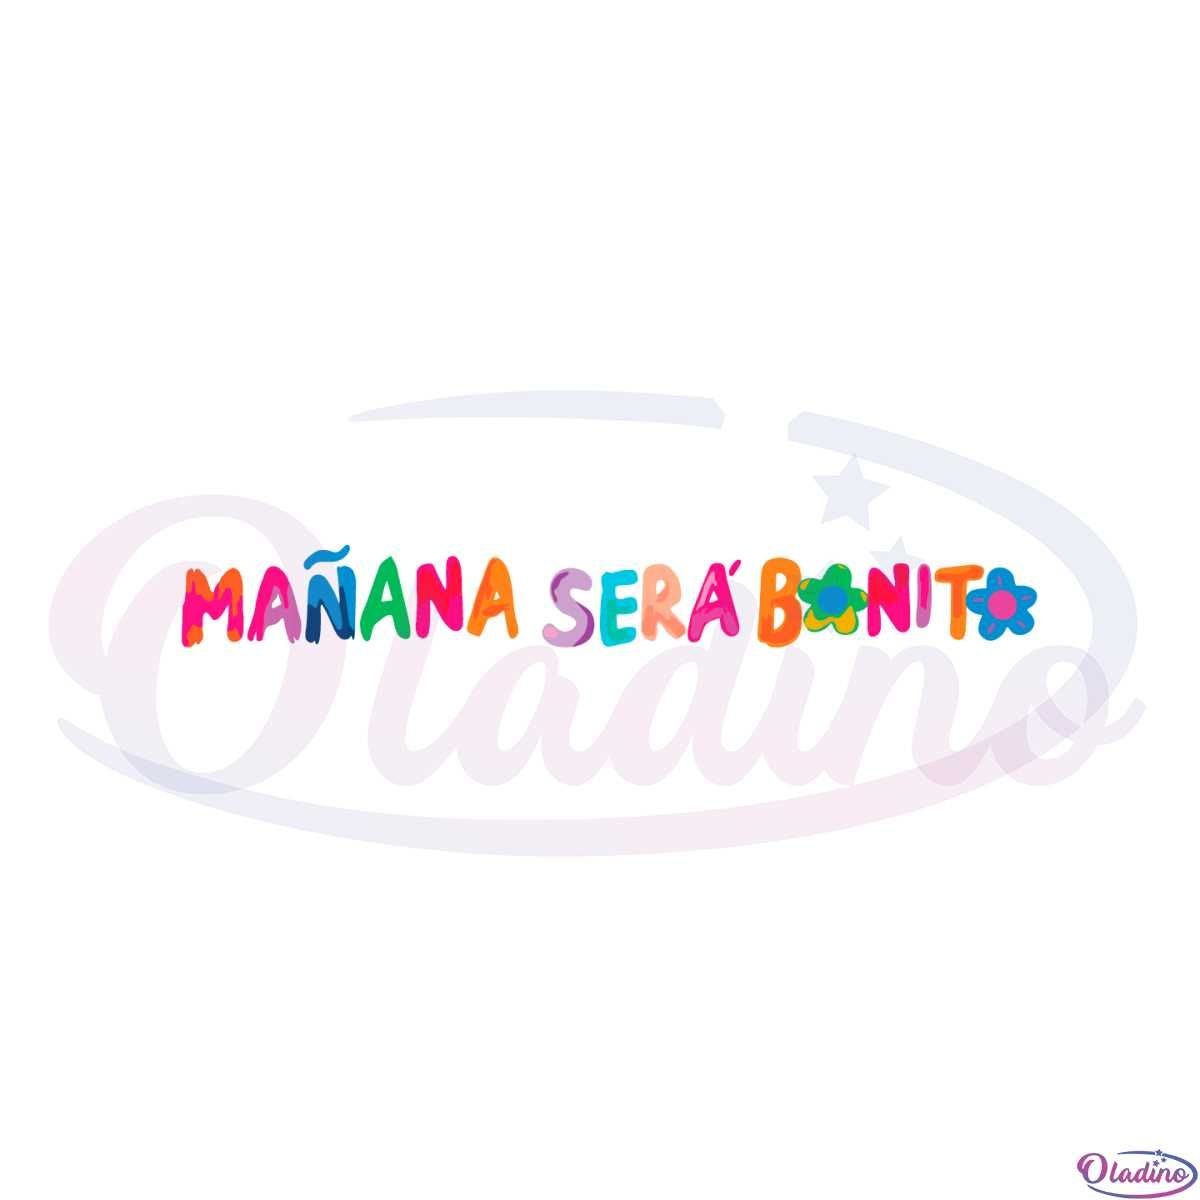 Karol G Manana Sera Bonito SVG For Cricut Sublimation Files